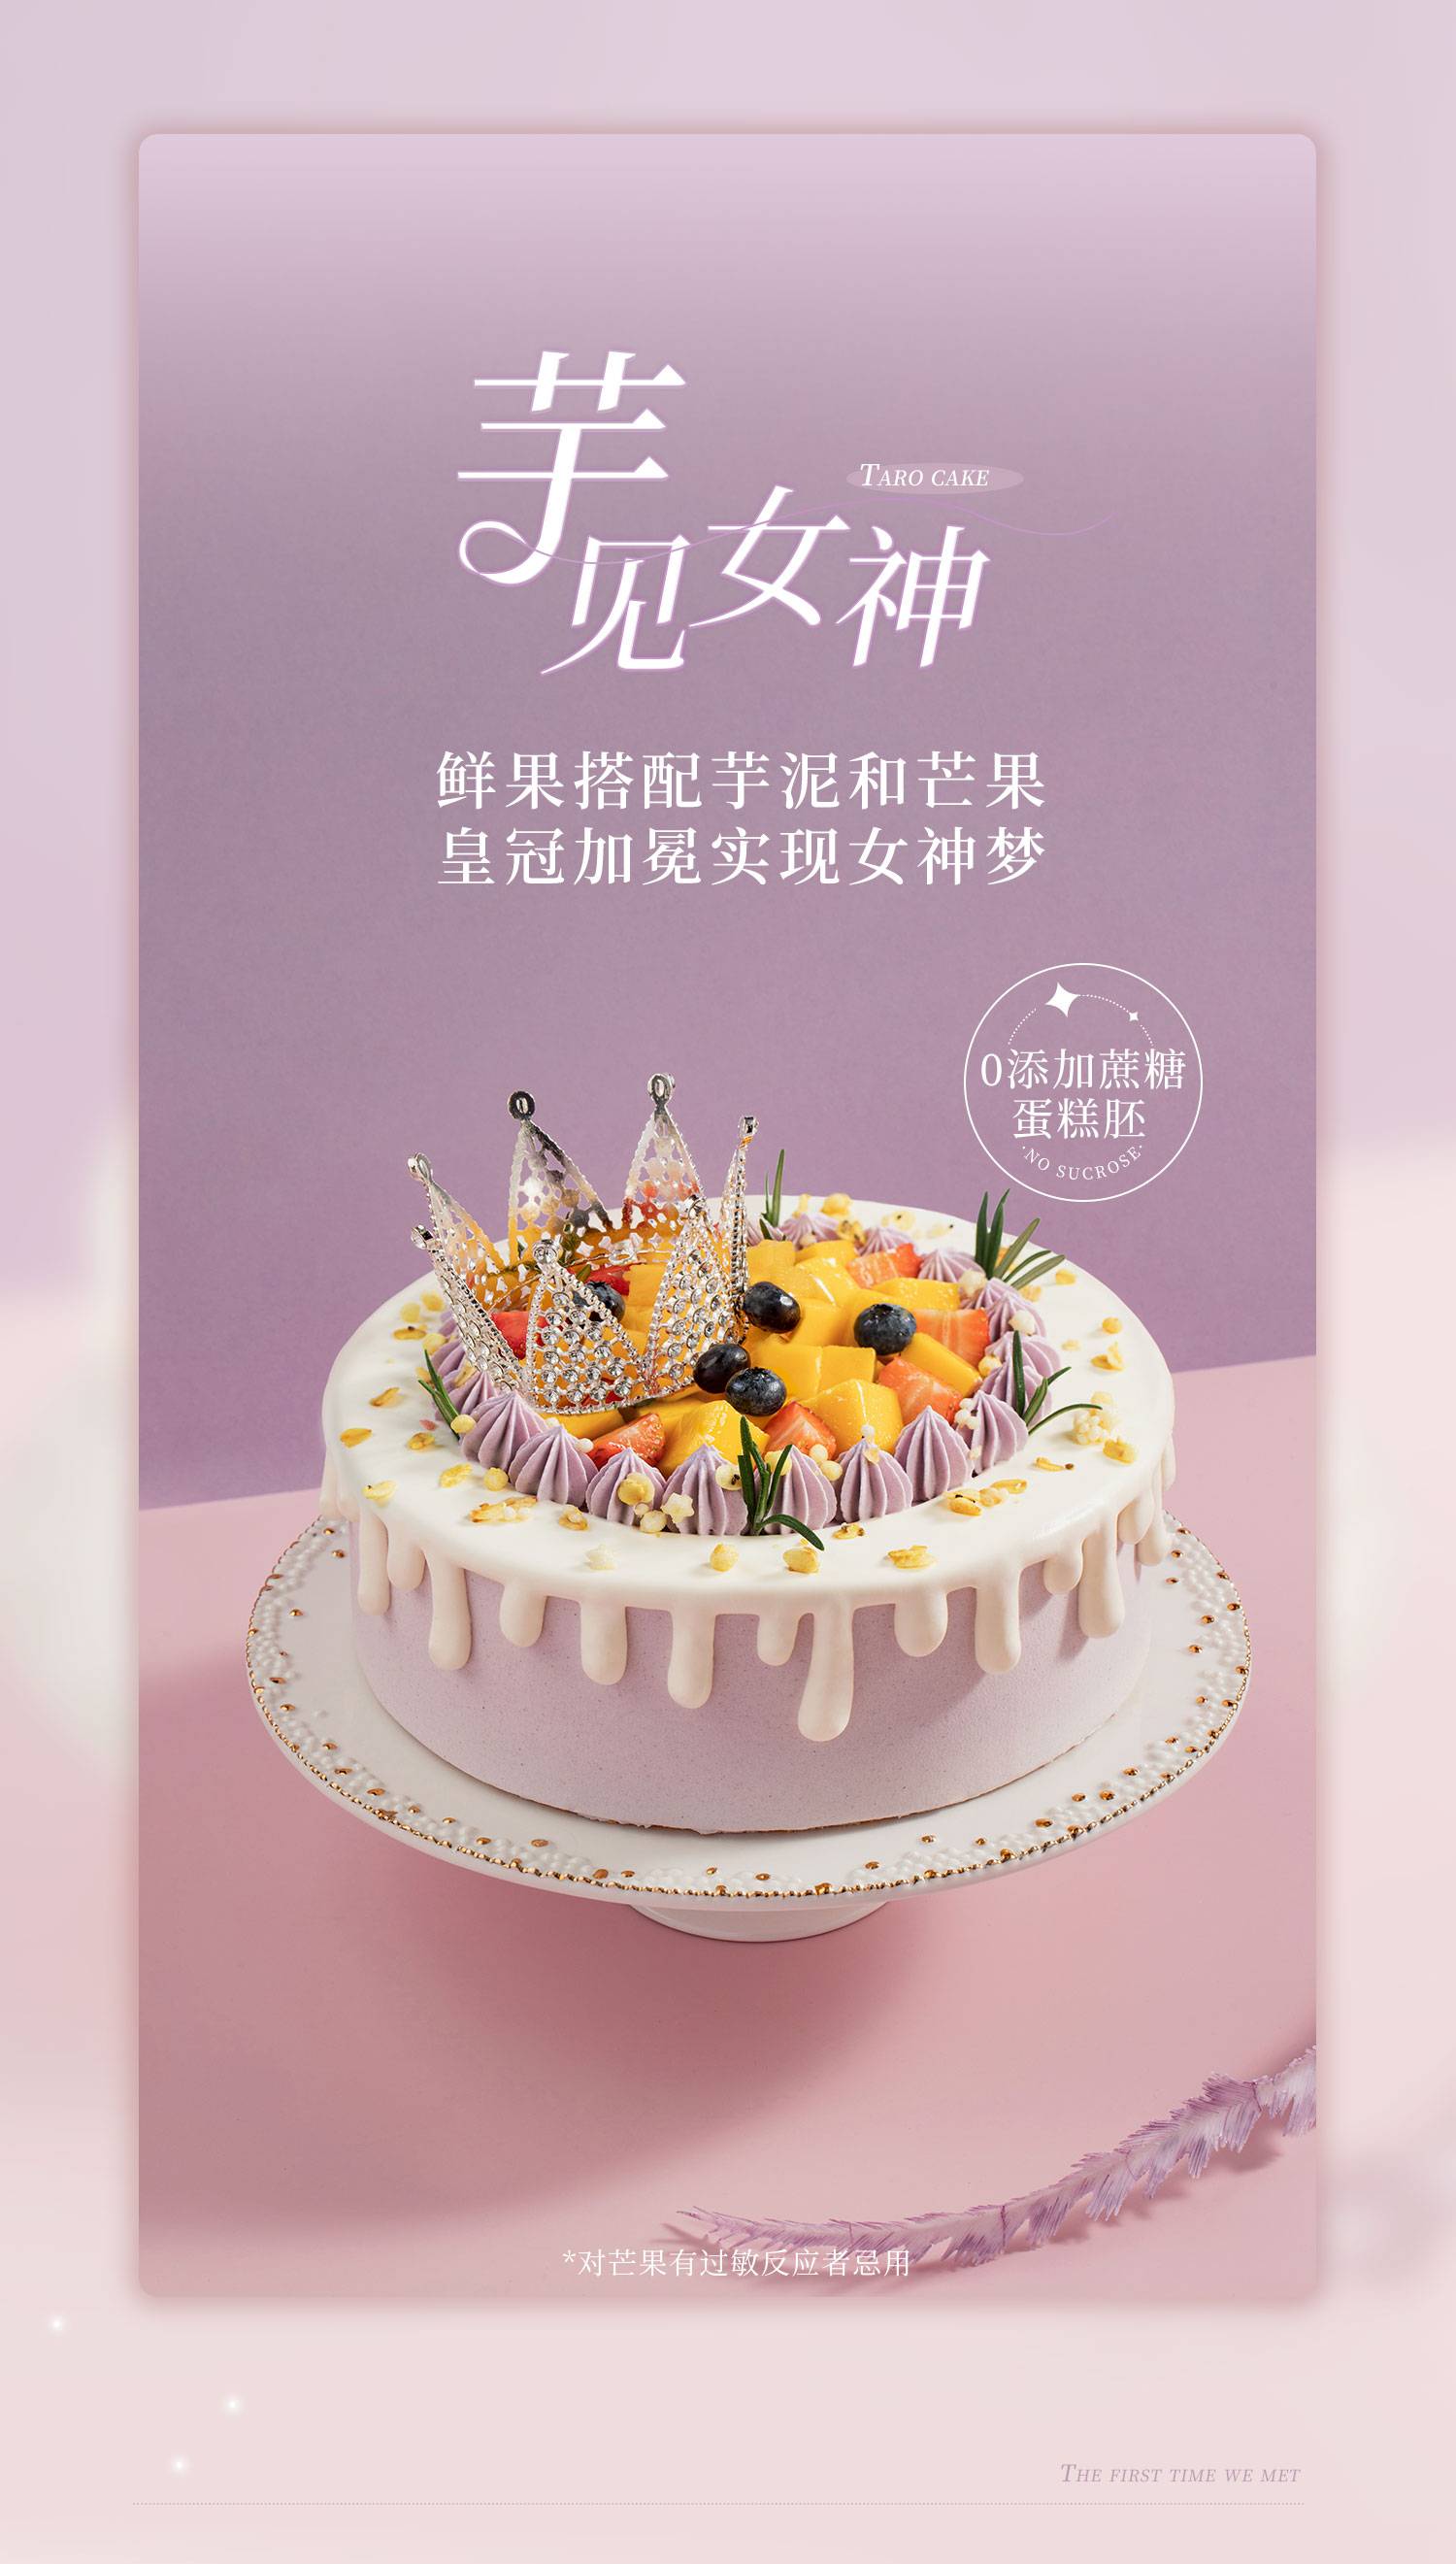 甜心莓莓_幸福西饼蛋糕预定_加盟幸福西饼_深圳幸福西饼官方网站